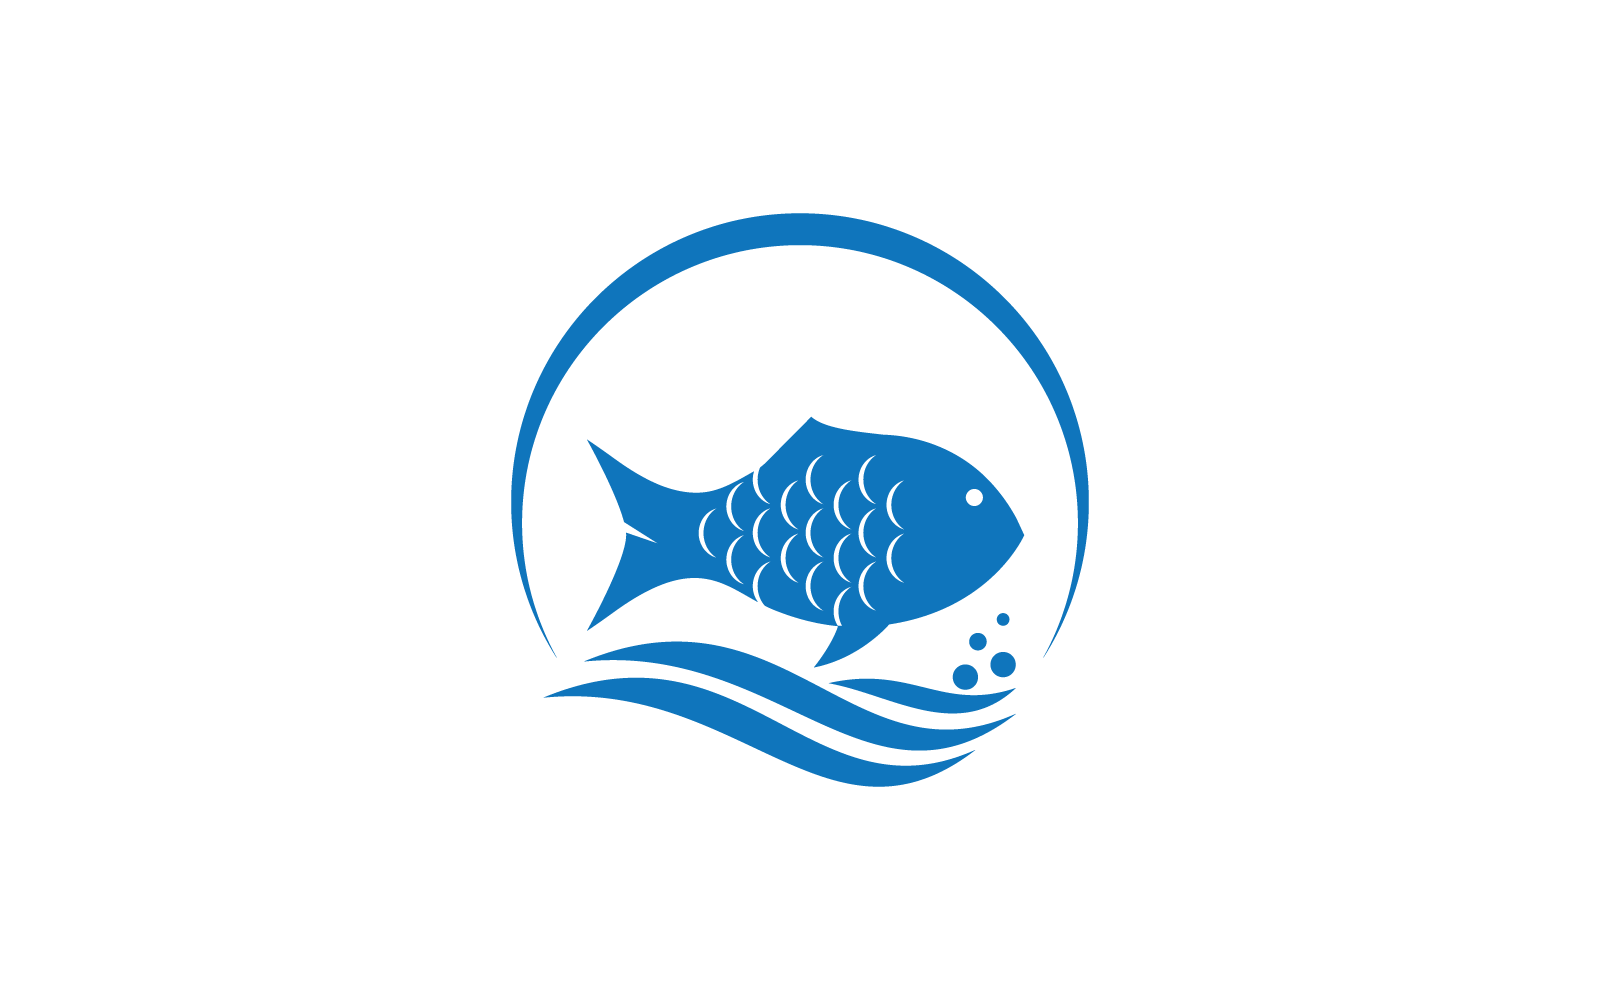 Fish illustration logo flat design